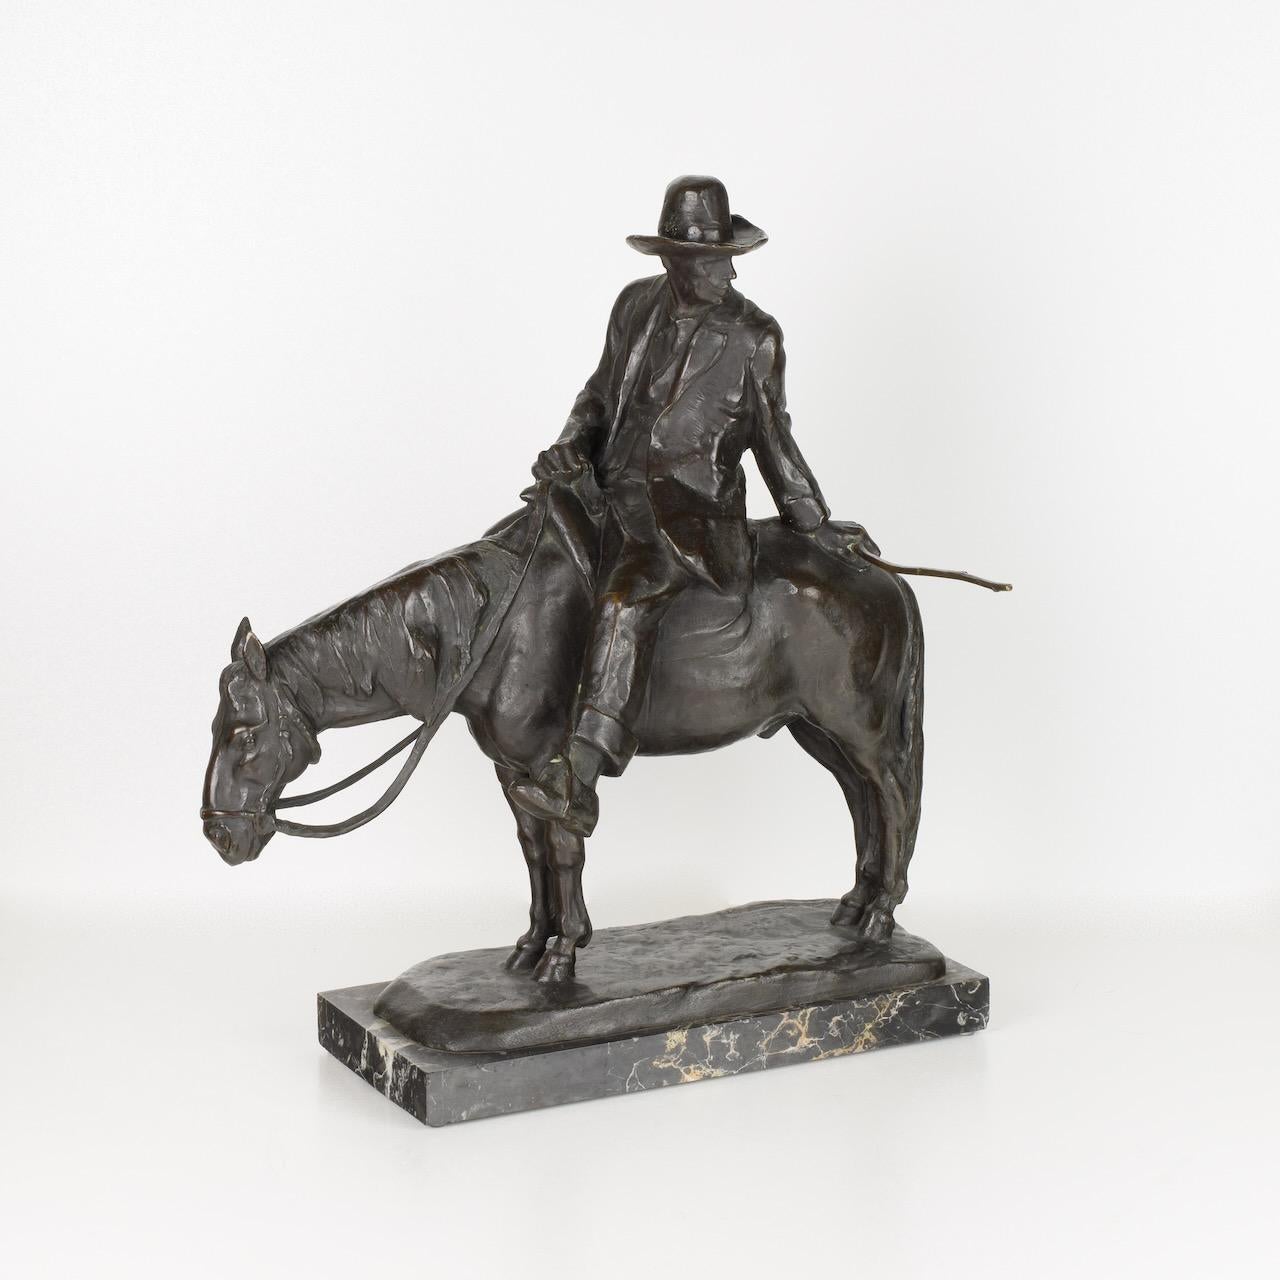 Giulio Cipriani (1887-1956)
Skulptur aus dunkel patinierter Bronze mit schwarzem Marmorsockel.
Abmessungen cm B44 x T29 x H50 ca.